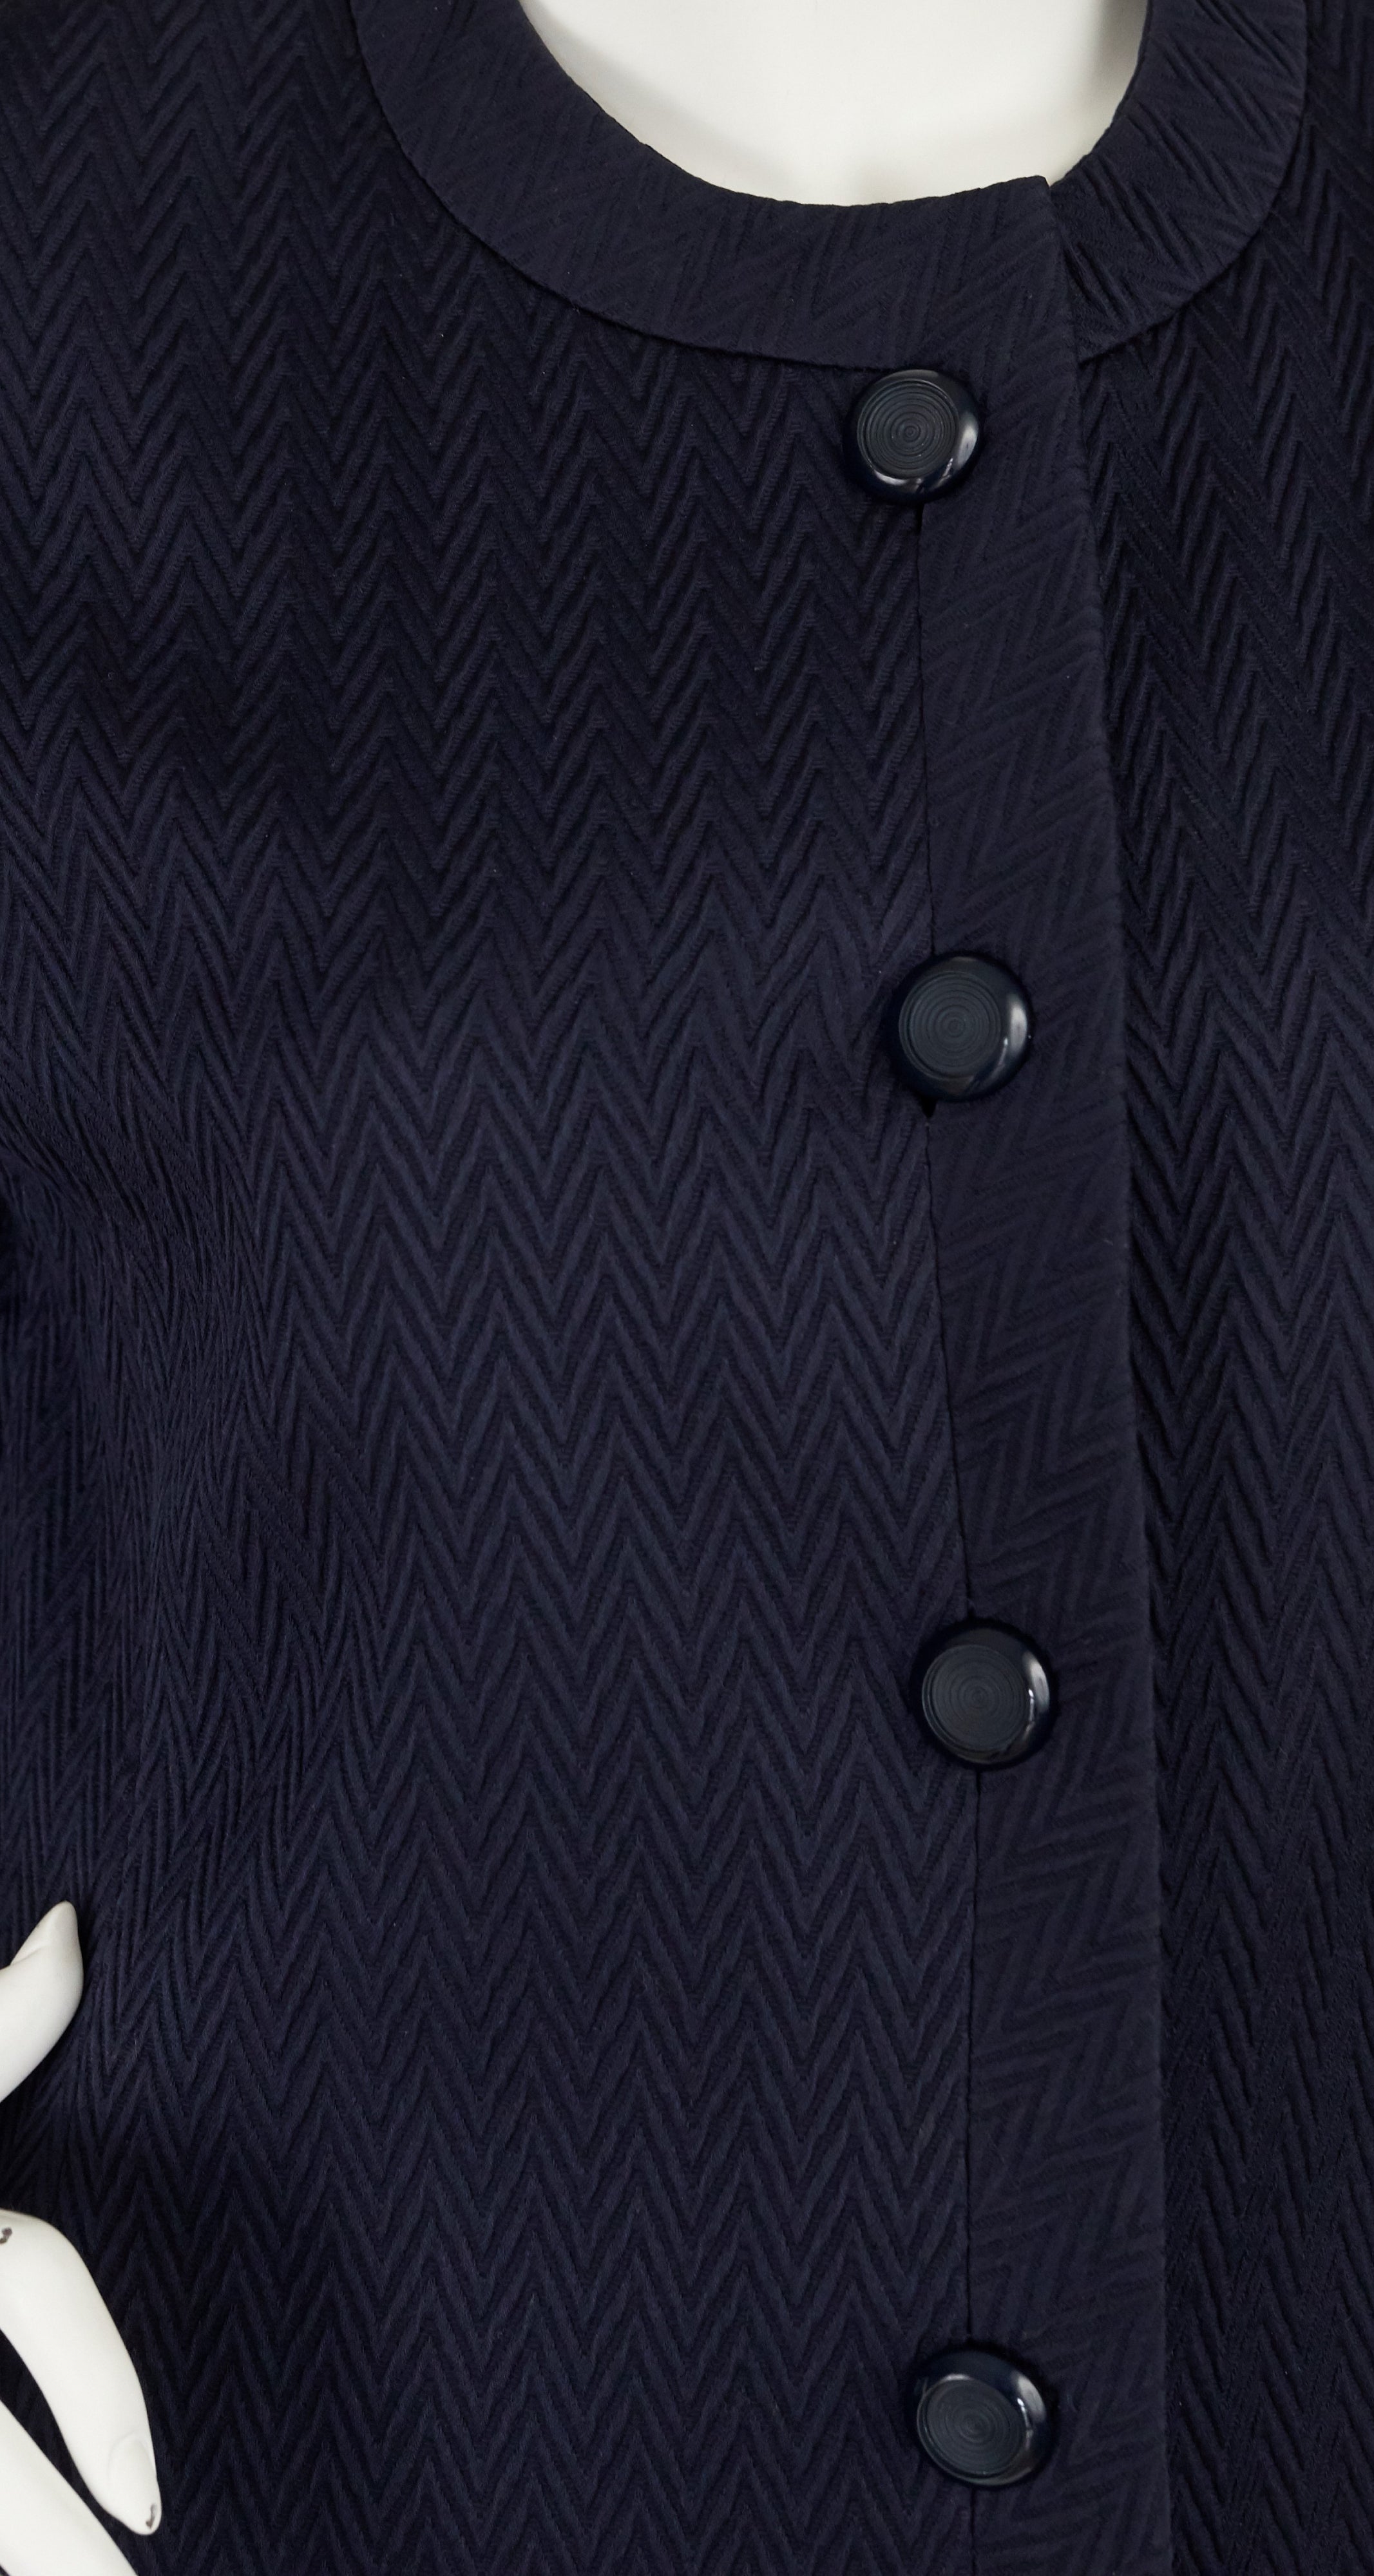 1980s "V" Pattern Navy Blue Cotton Suit